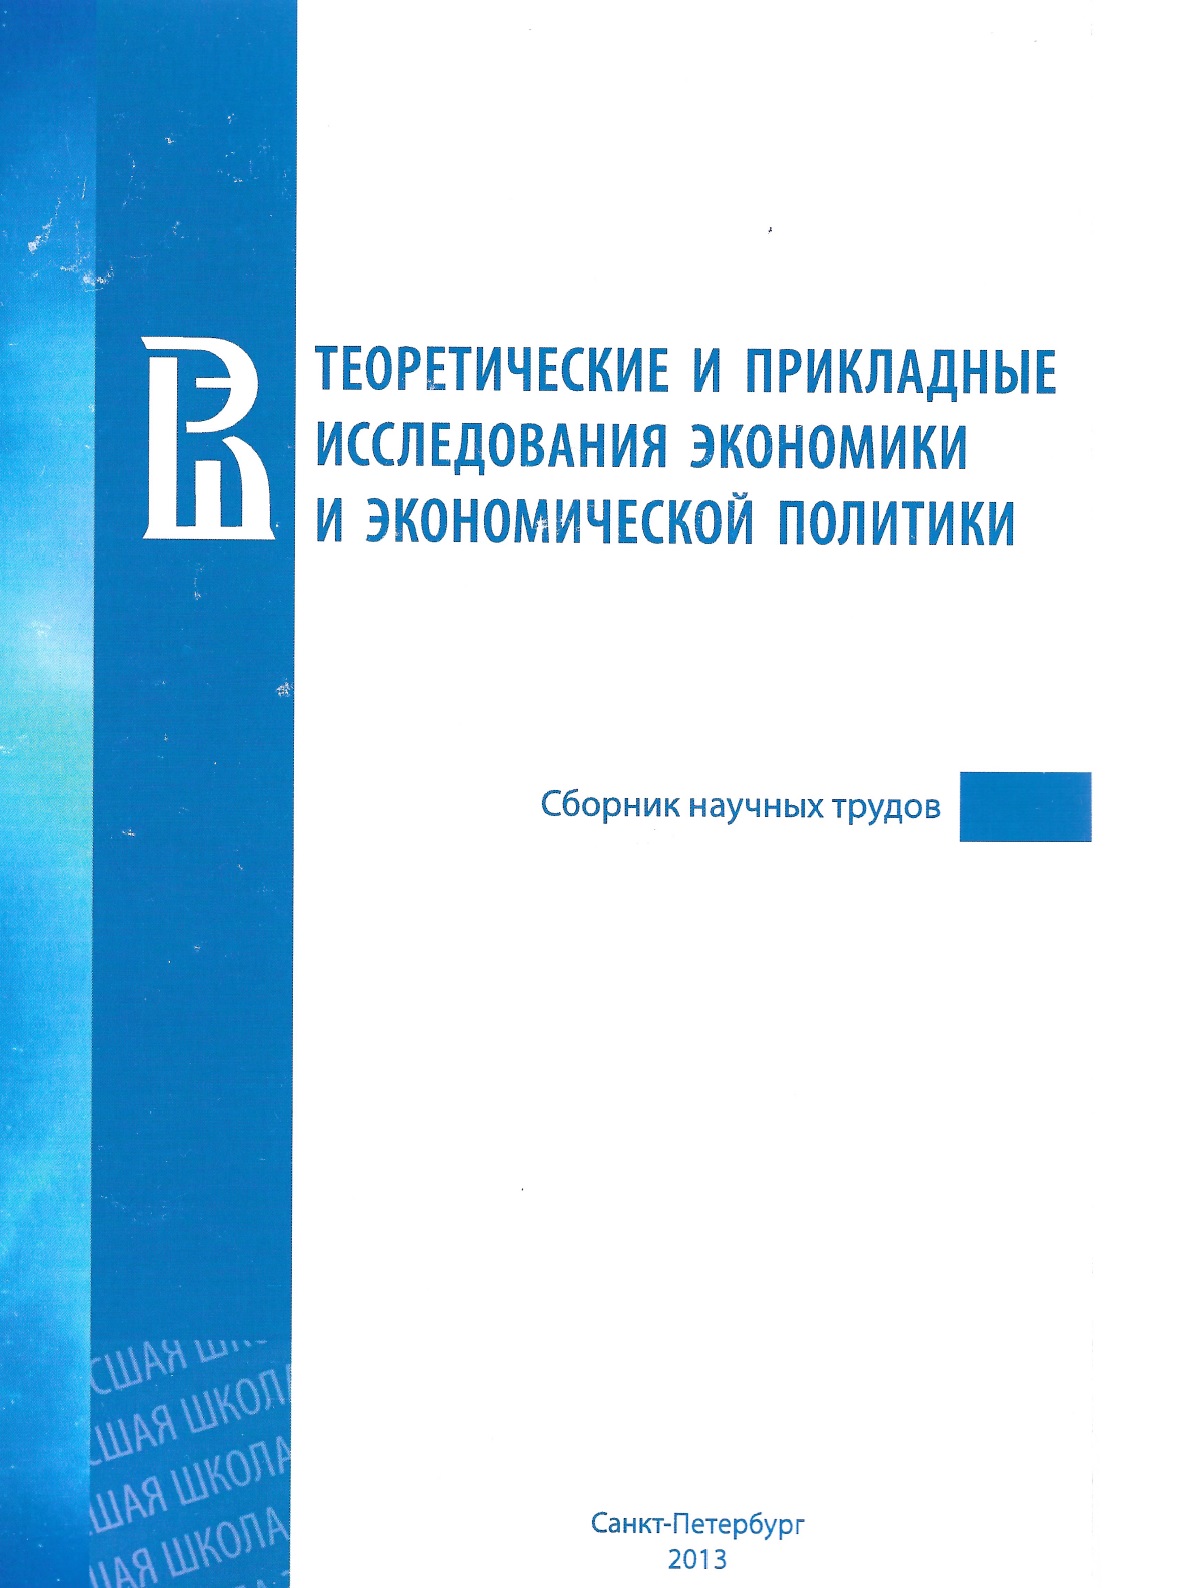 Теоретические и прикладные исследования экономики и экономической политики: сборник научных трудов